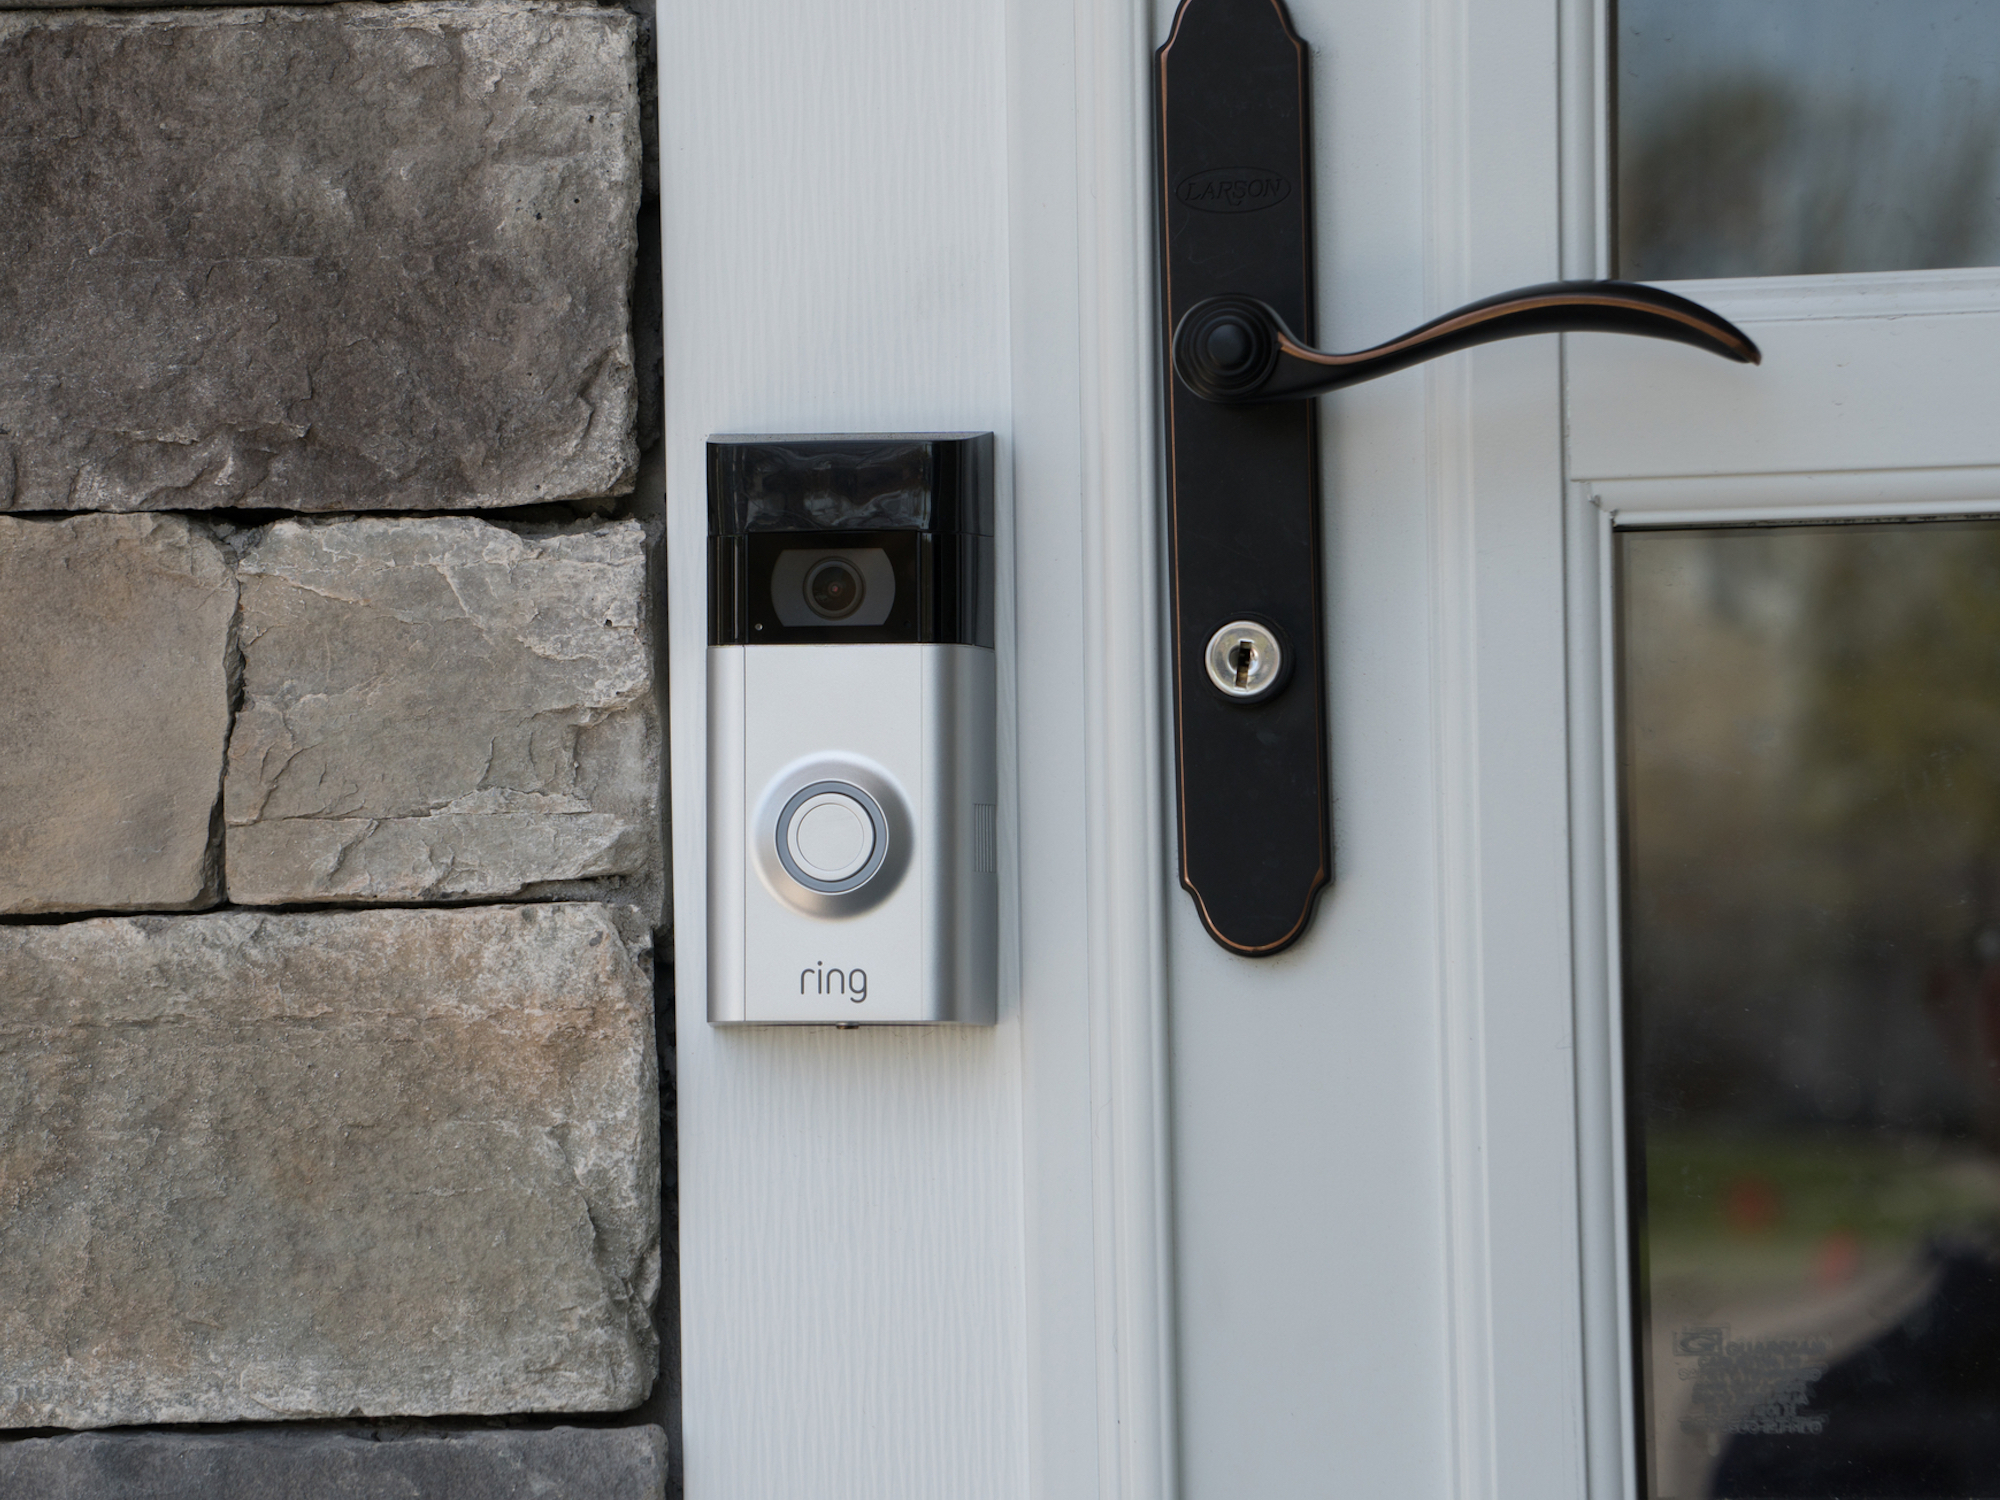 Amazon Ring security doorbell camera installed next to front door